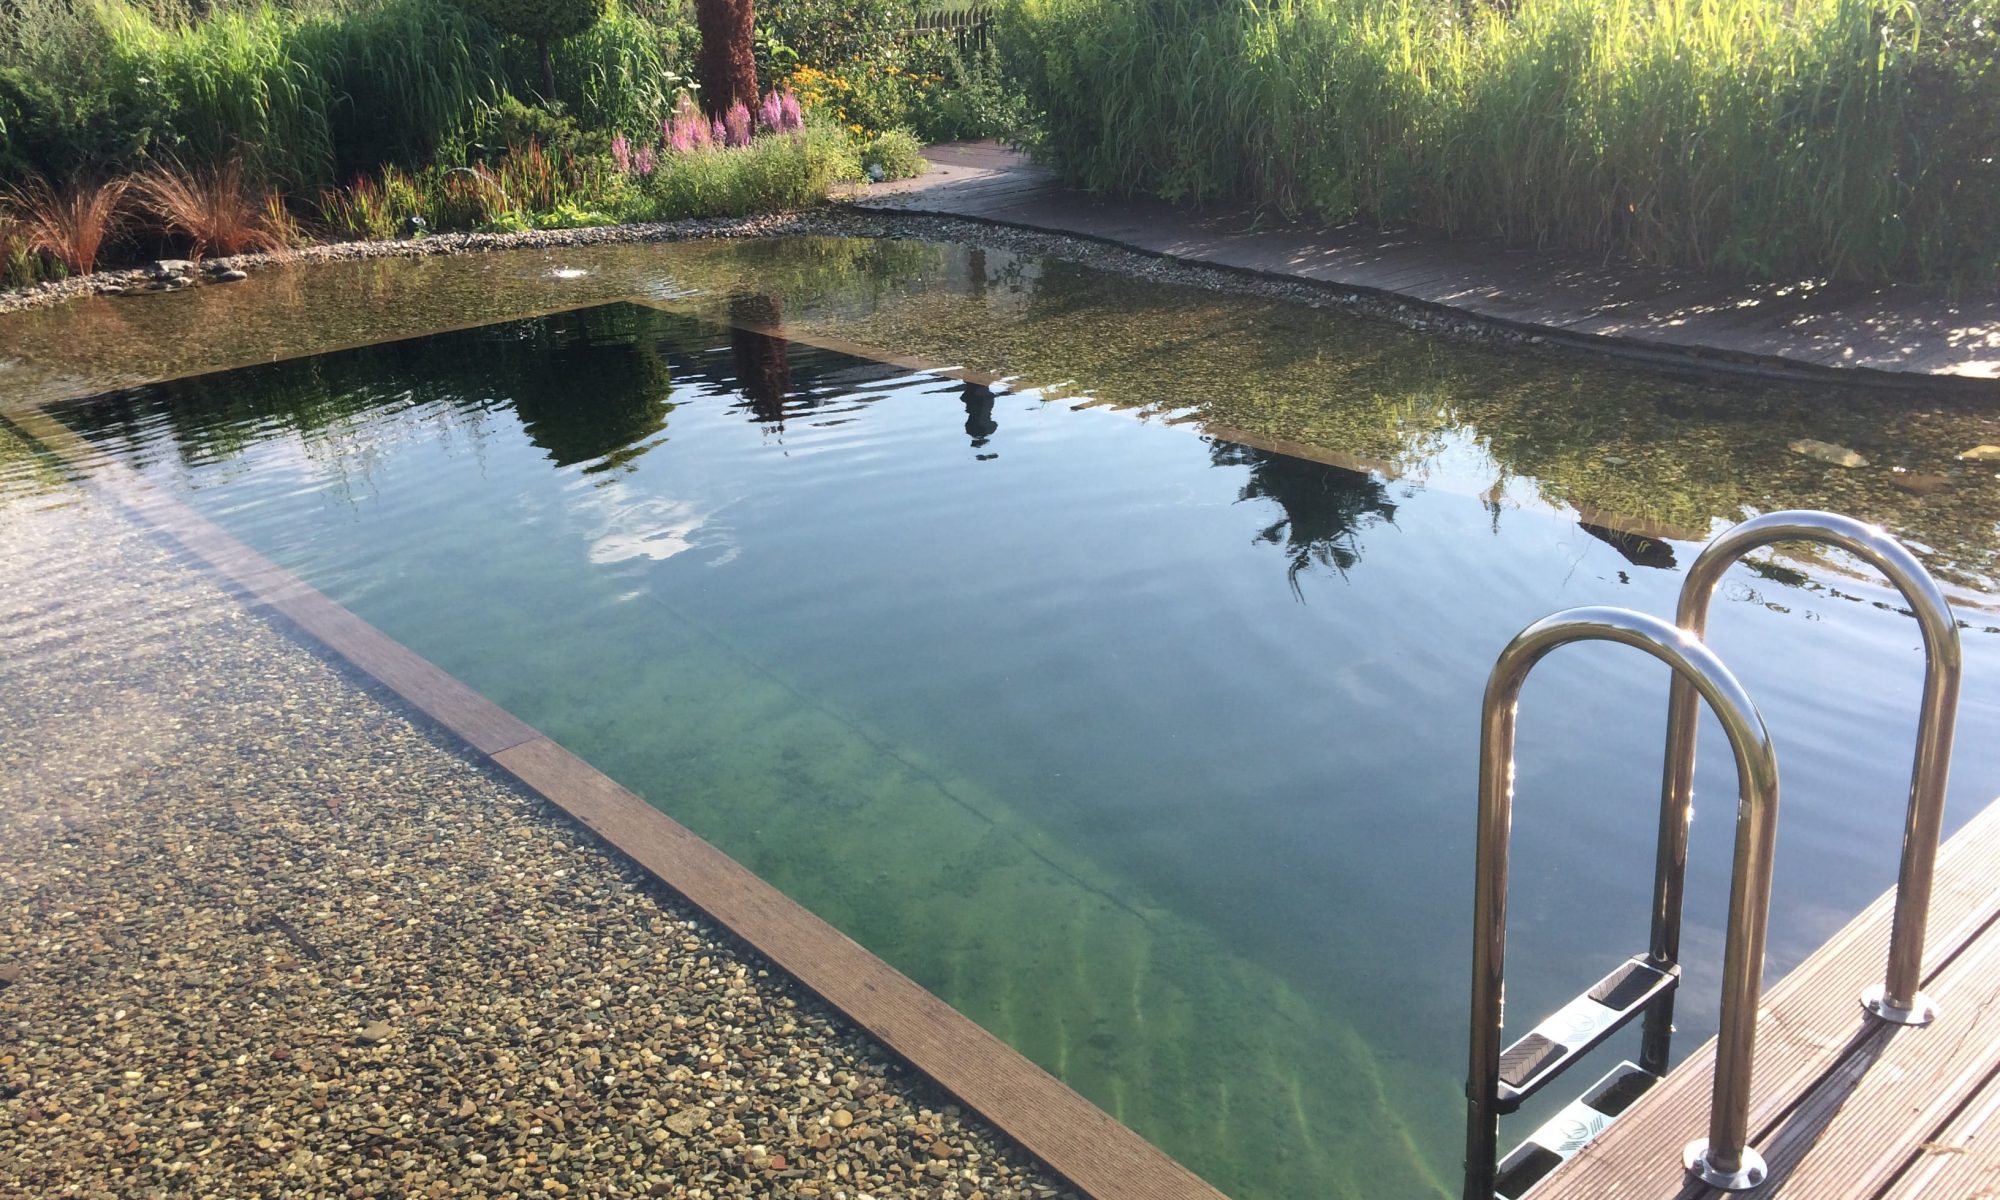 Staw kąpielowy - ekologiczna alternatywa basenu